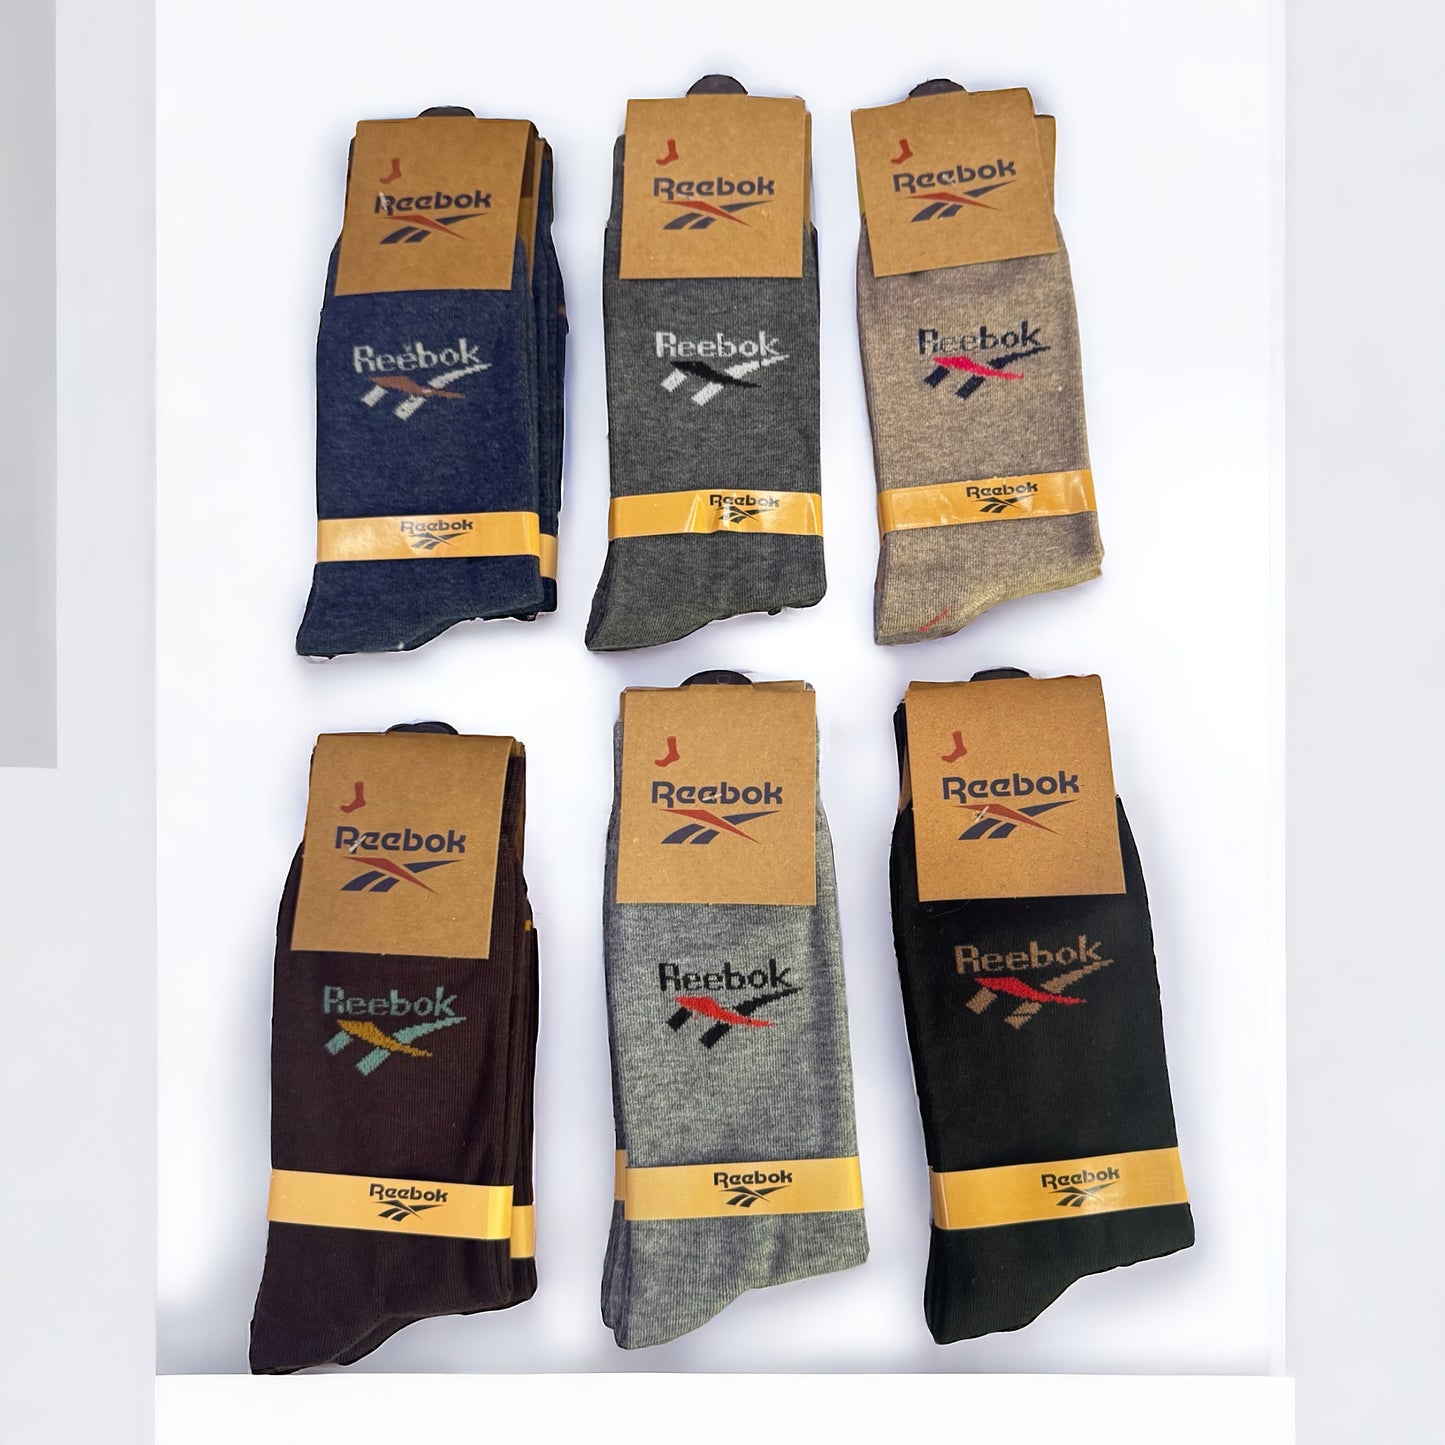 R-E-E-B-O-K Premium Full Length Socks (Pack of 12)